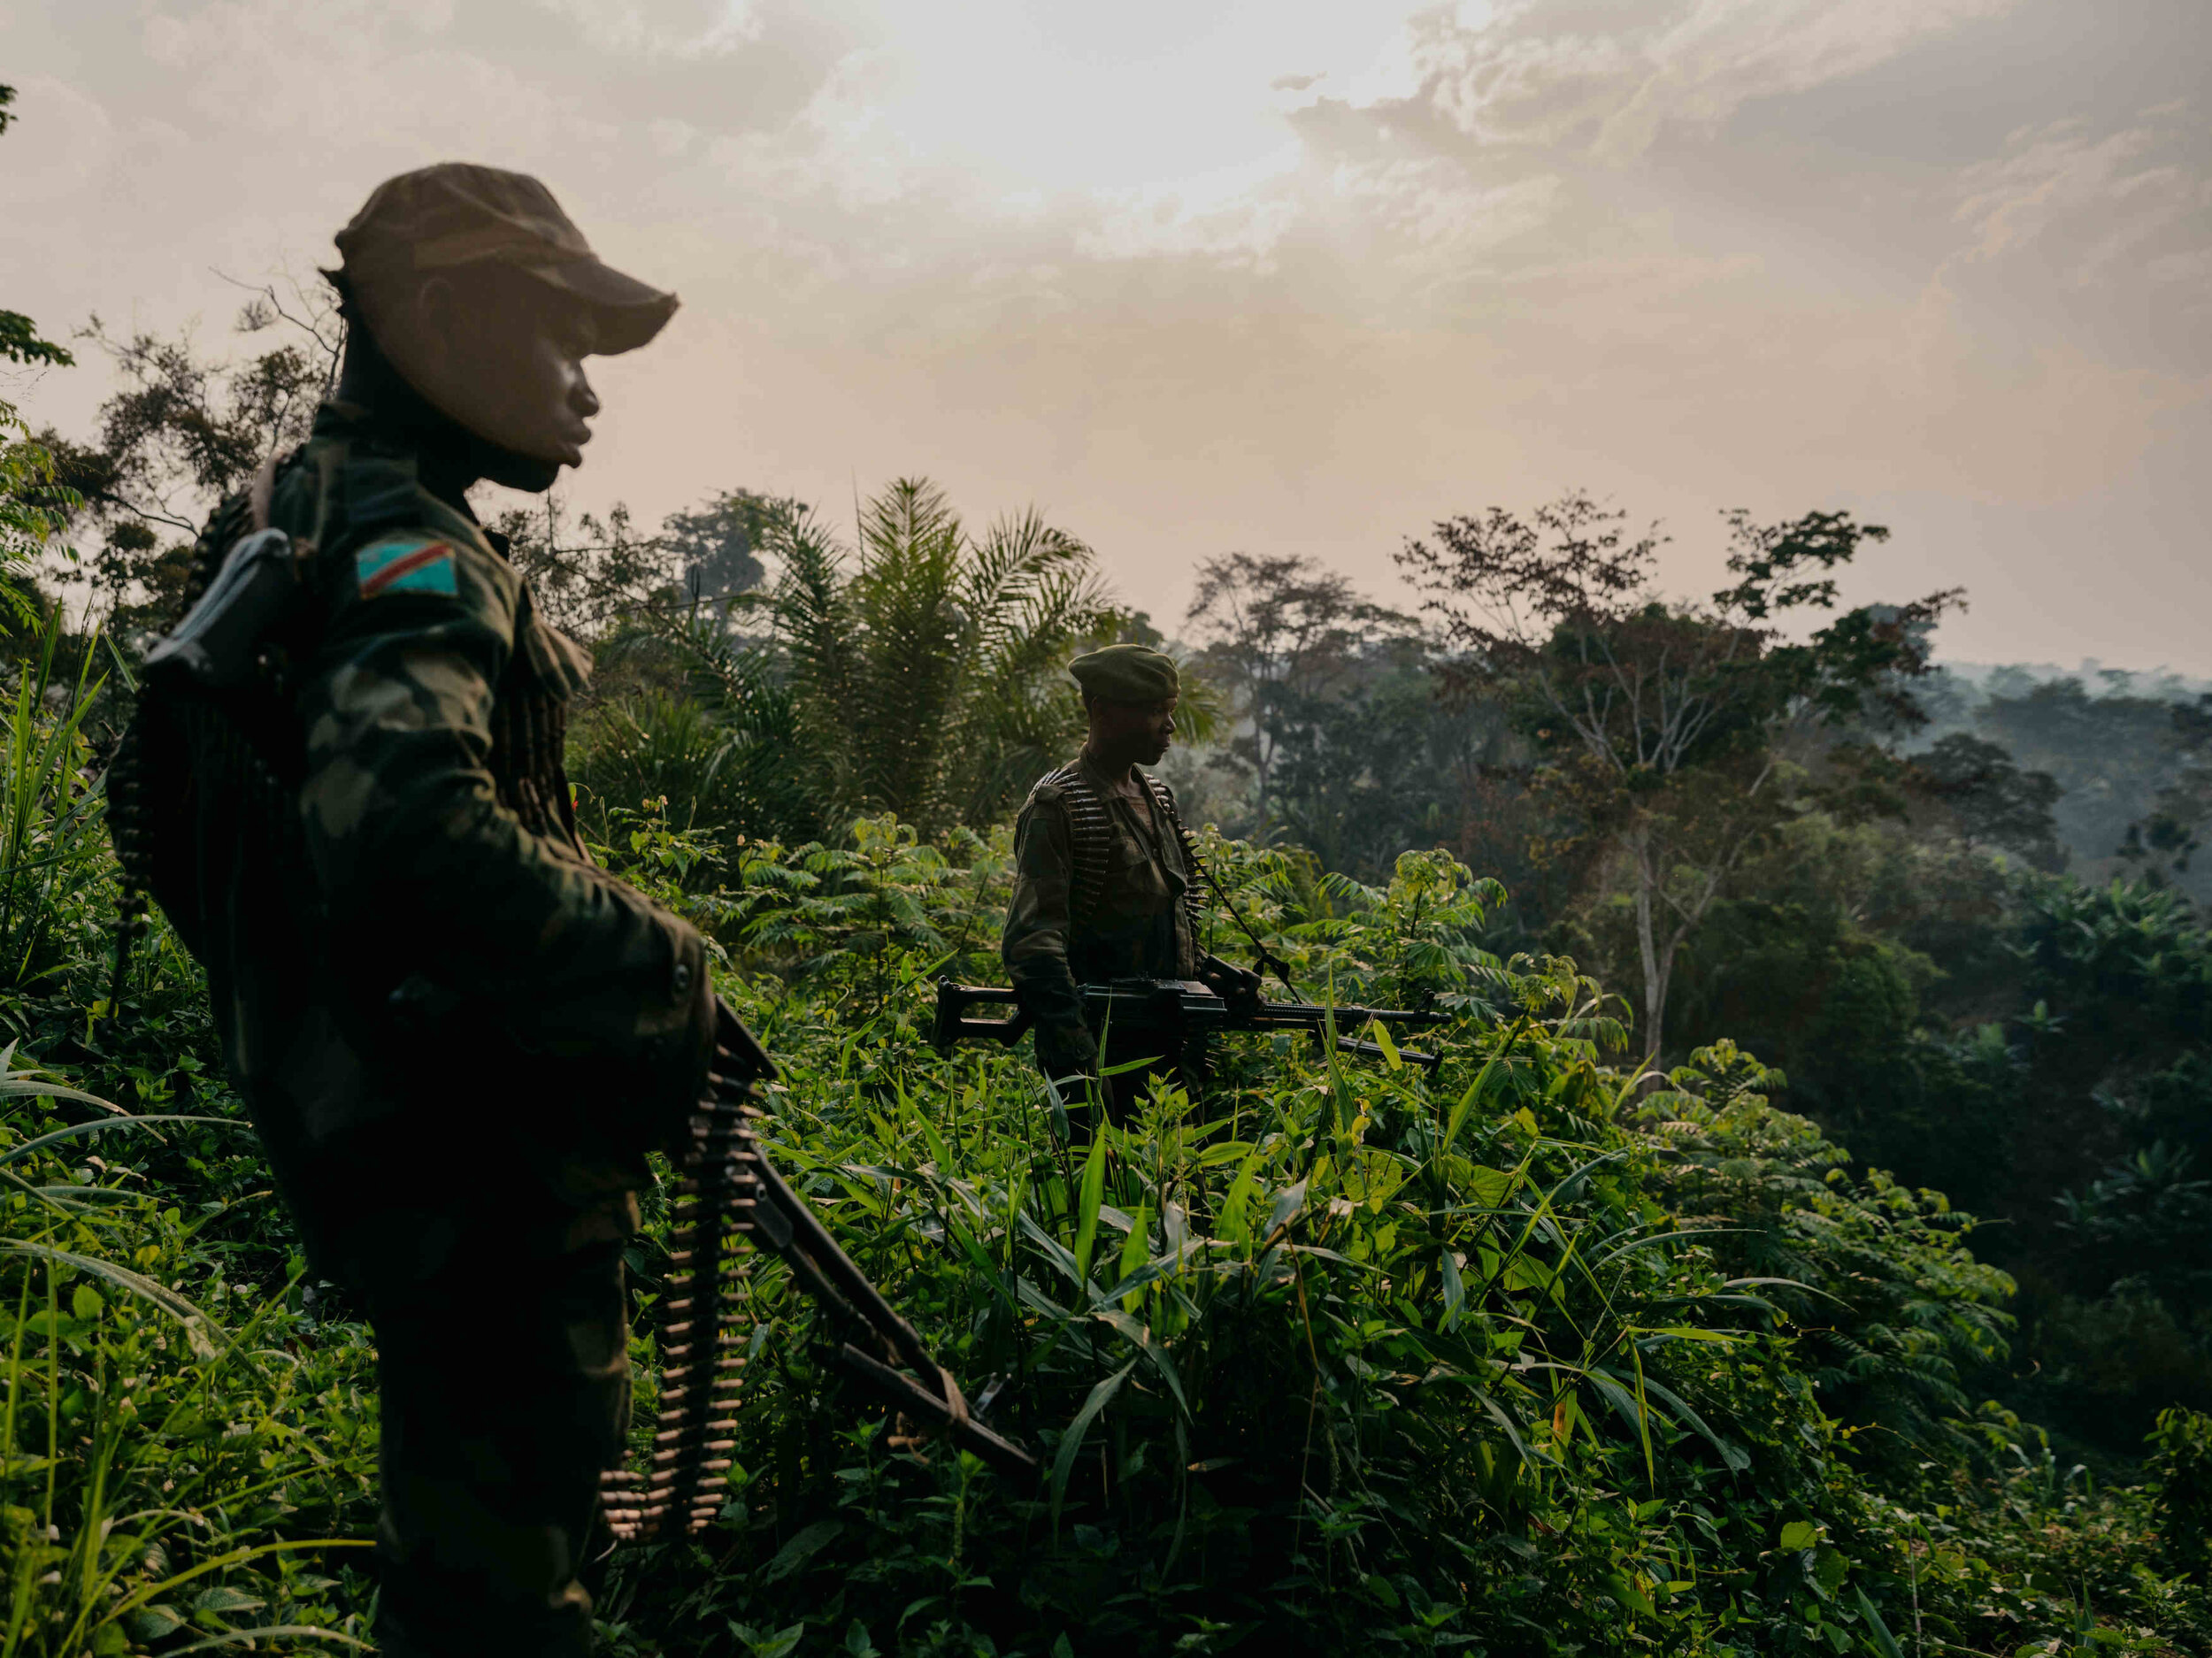 Bienvenue à Semuliki: Hunting the ADF. North Kivu, Democratic Republic of Congo.